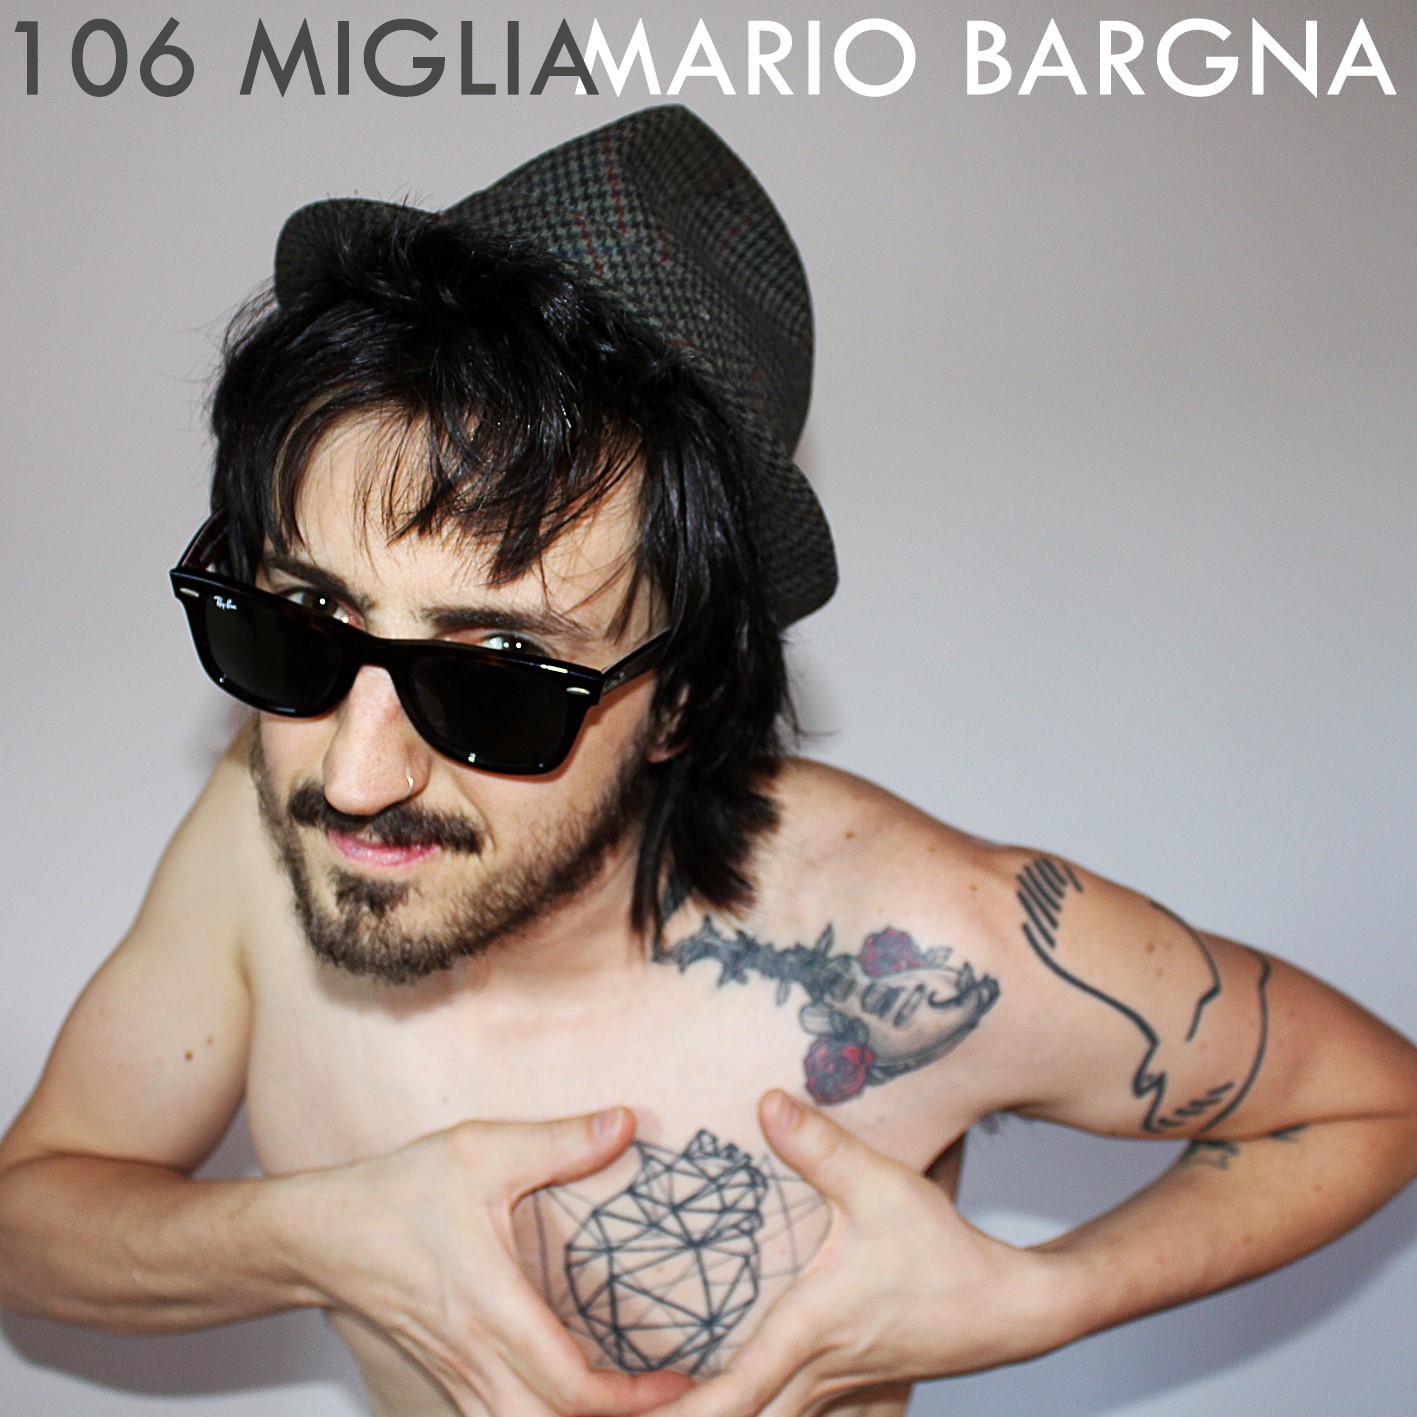 Mario Bargna 106 miglia COVER